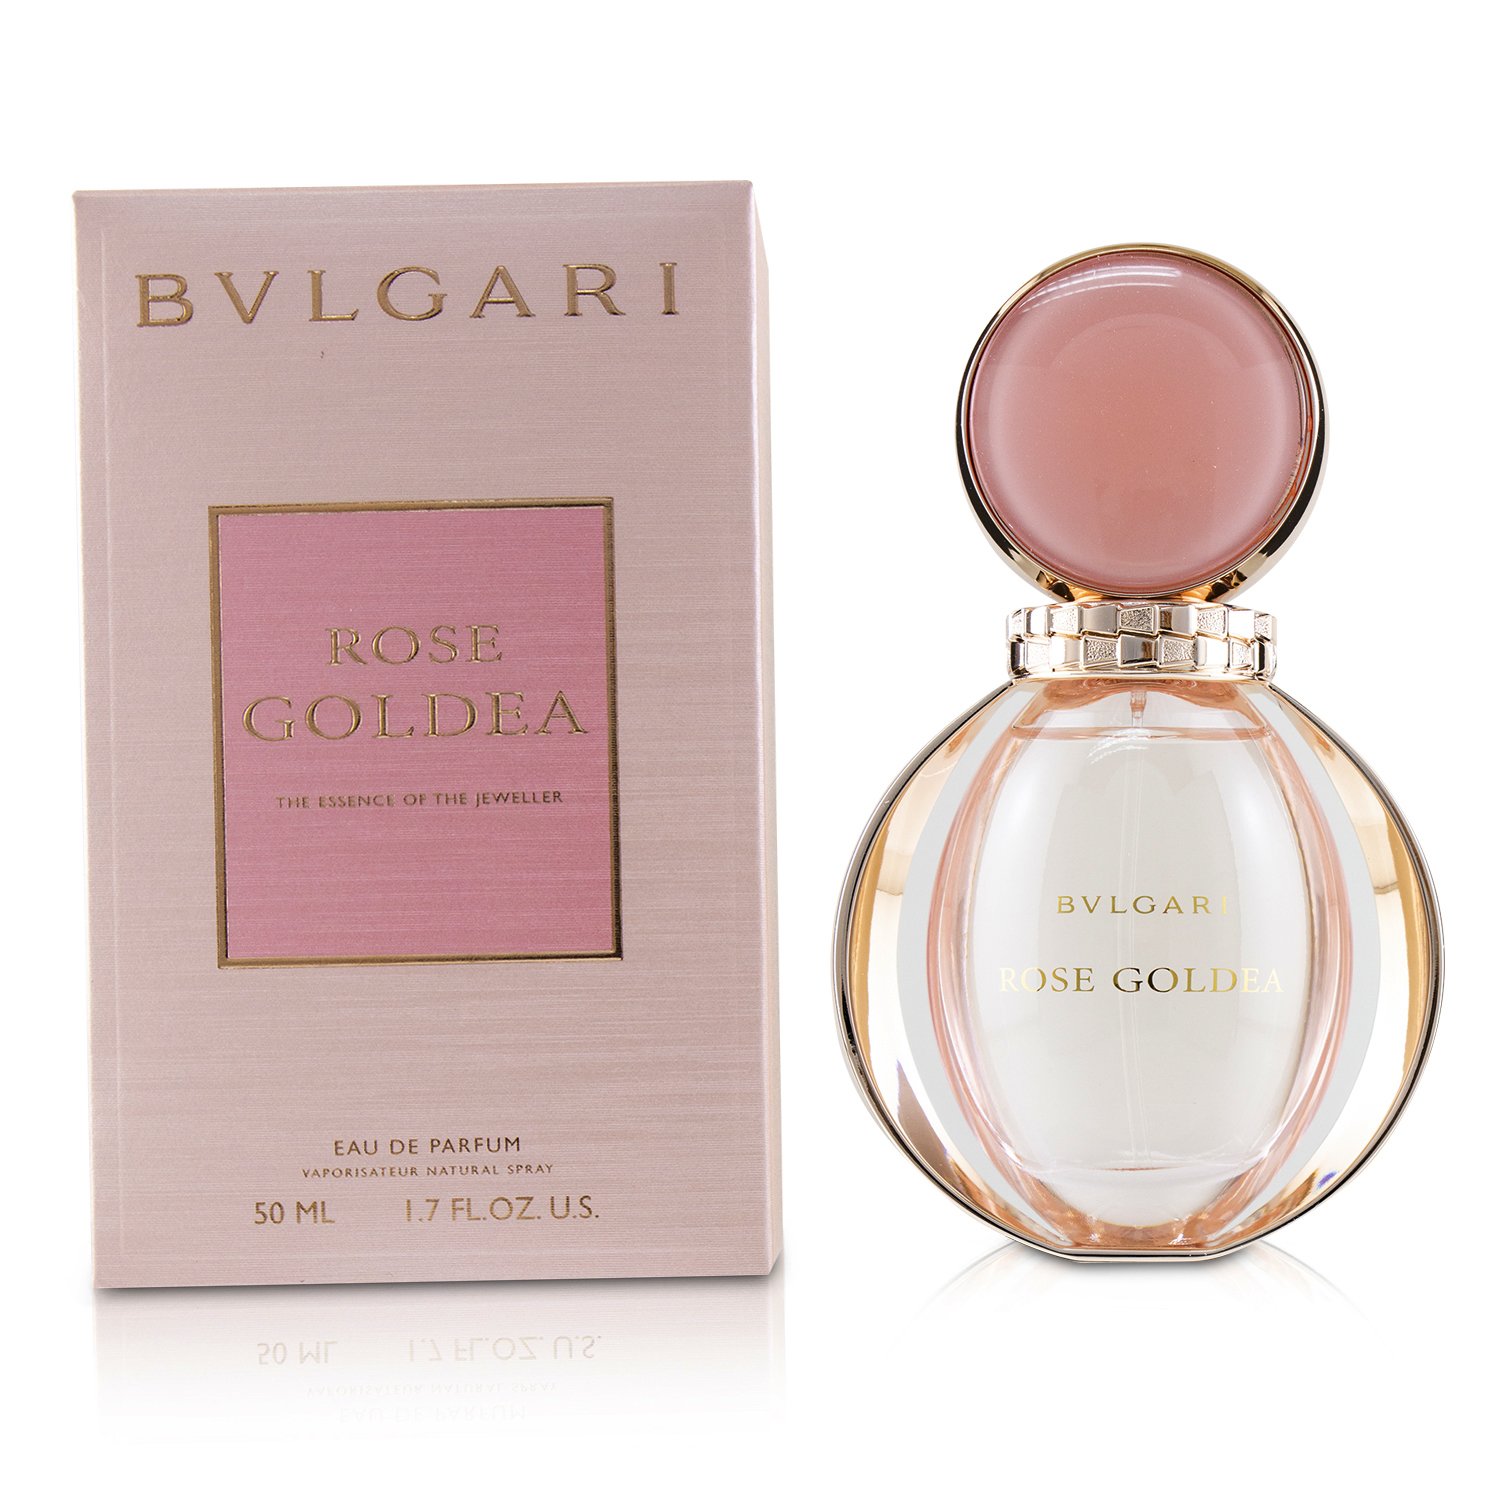 寶格麗Bvlgari - Rose Goldea 玫瑰金漾女性香水| 草莓網Strawberrynet